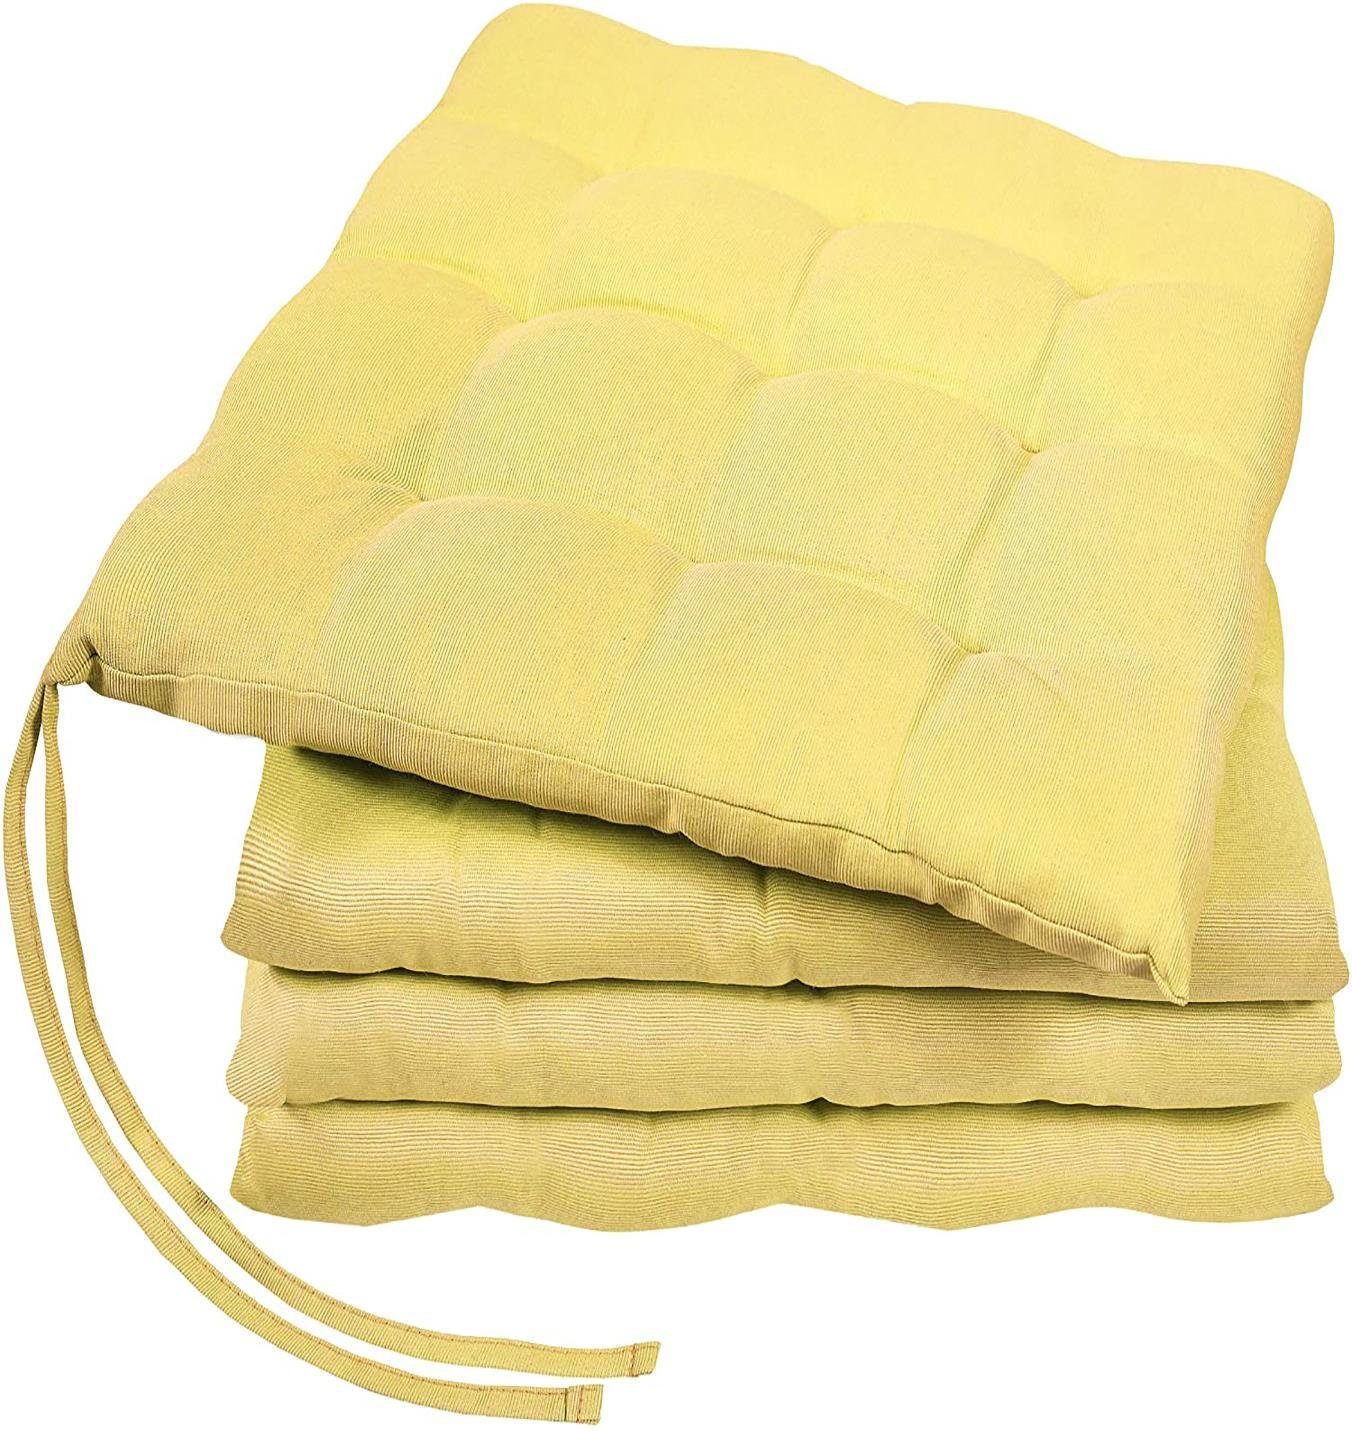 GREEN MARK Textilien Sitzkissen Sitzkissen, Stuhlkissen für Außen oder Innen, weich gefüllt, 40x40cm Gelb